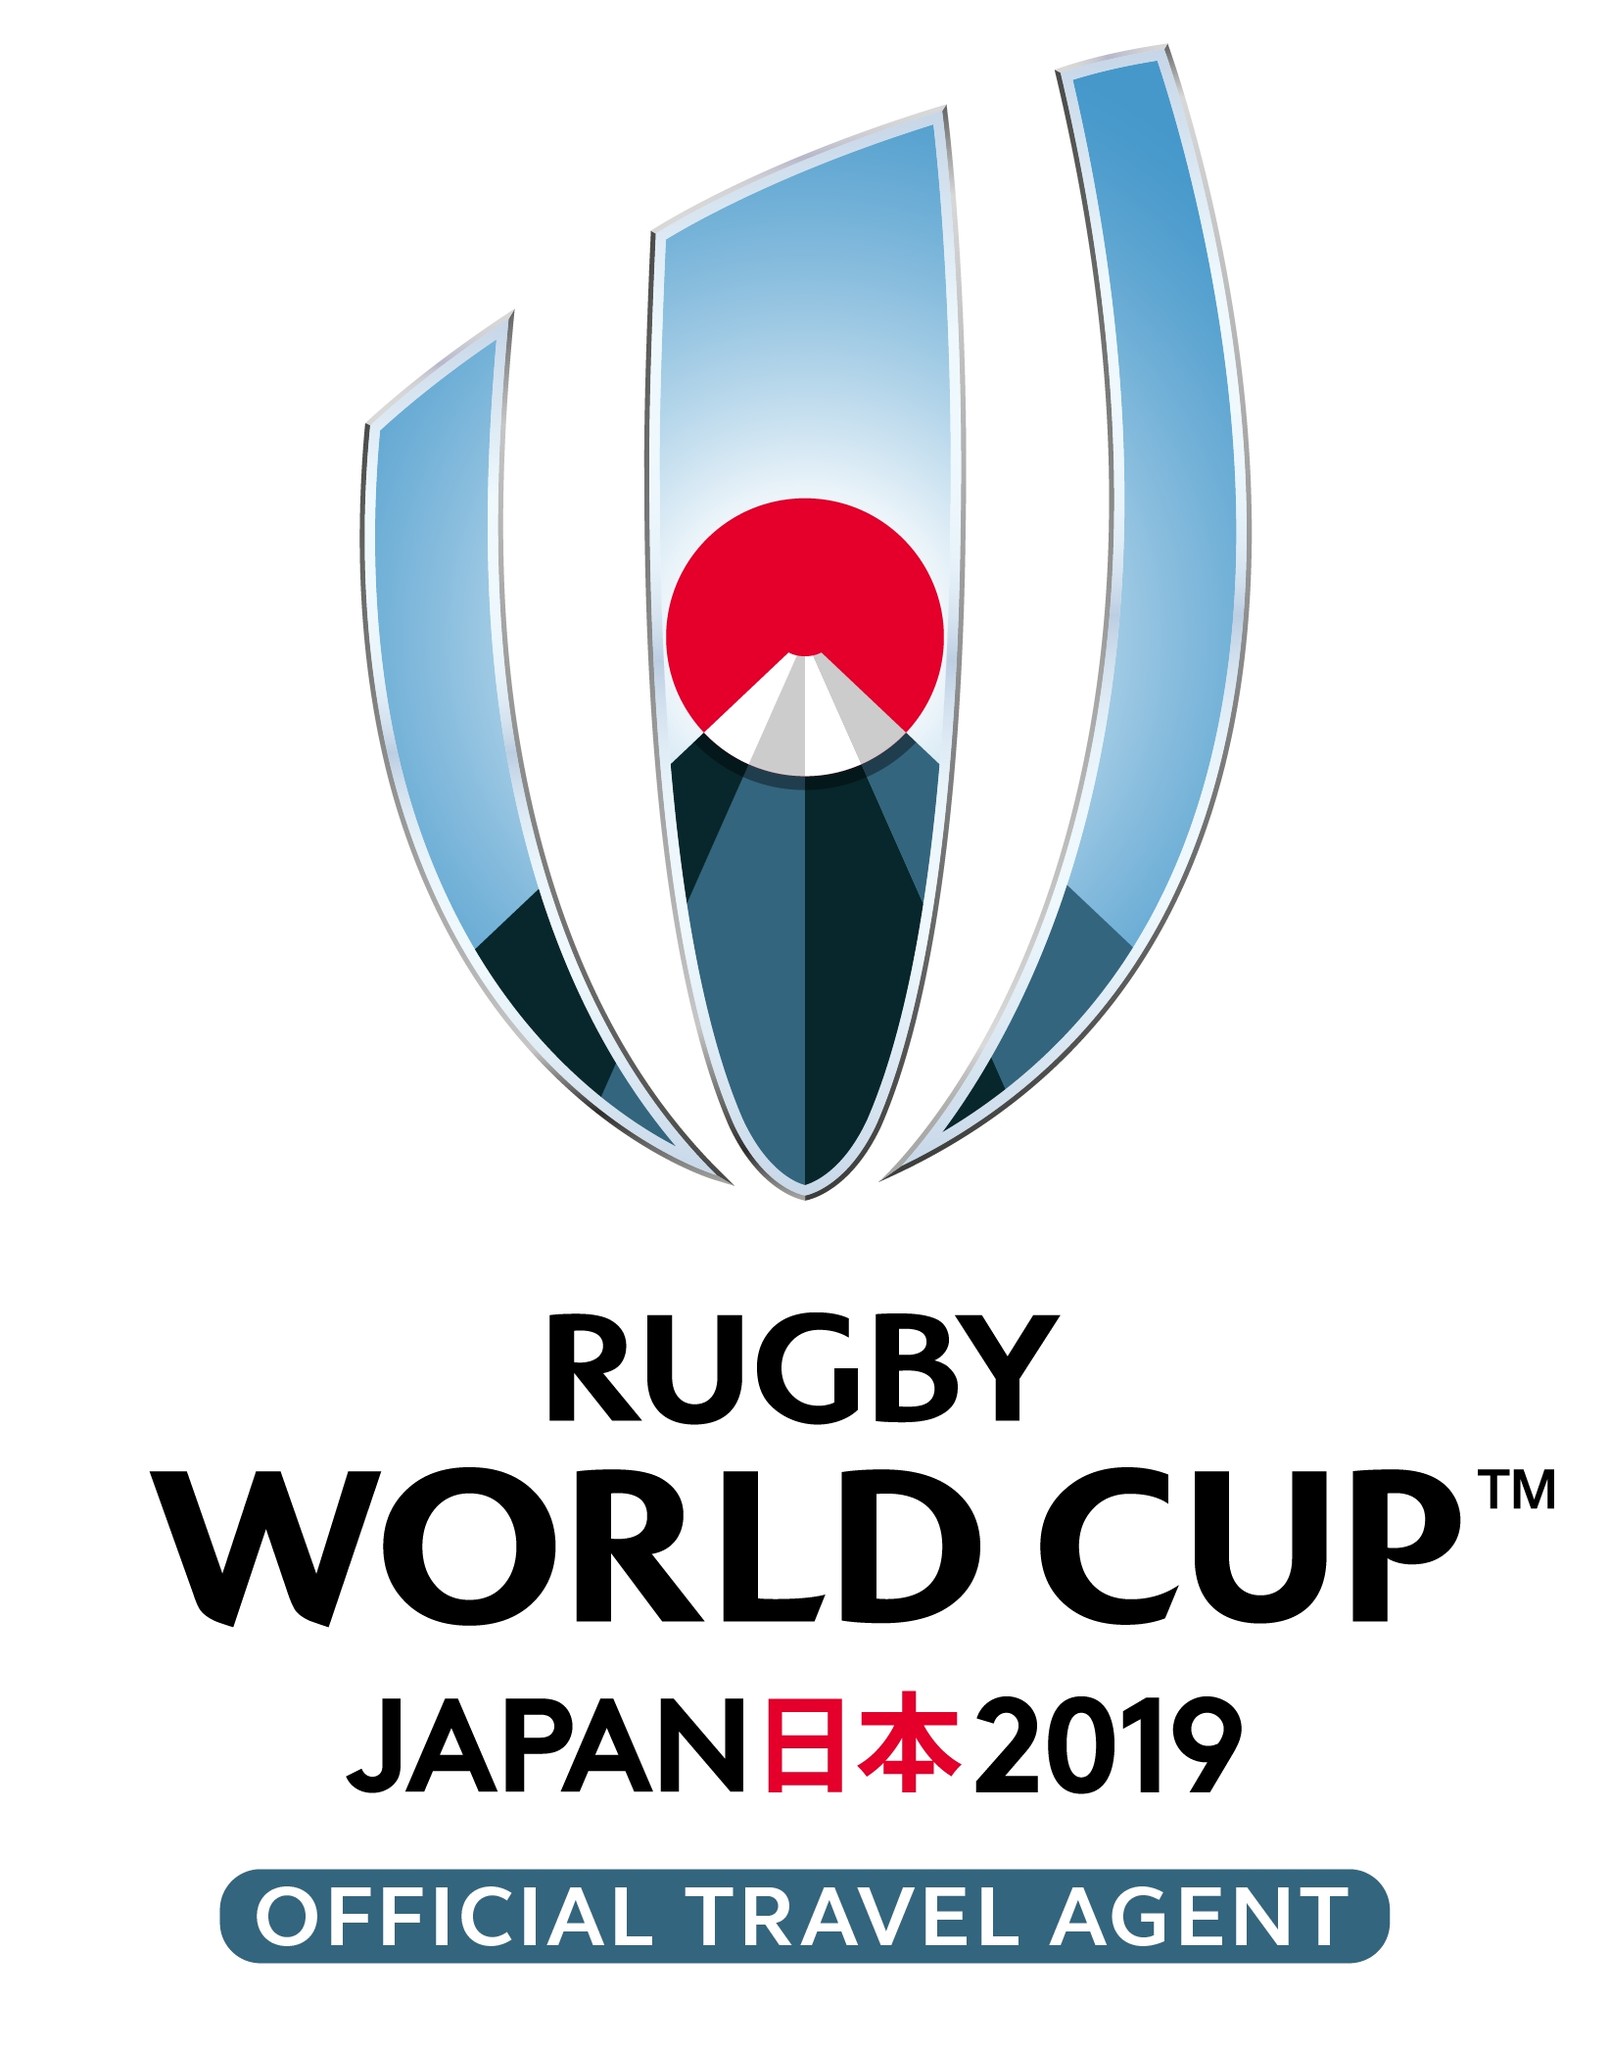 ラグビーワールドカップ19tm日本大会 国内唯一の公式旅行会社jtbが観戦券付ツアー第1弾を発売 株式会社ジェイティービーのプレスリリース